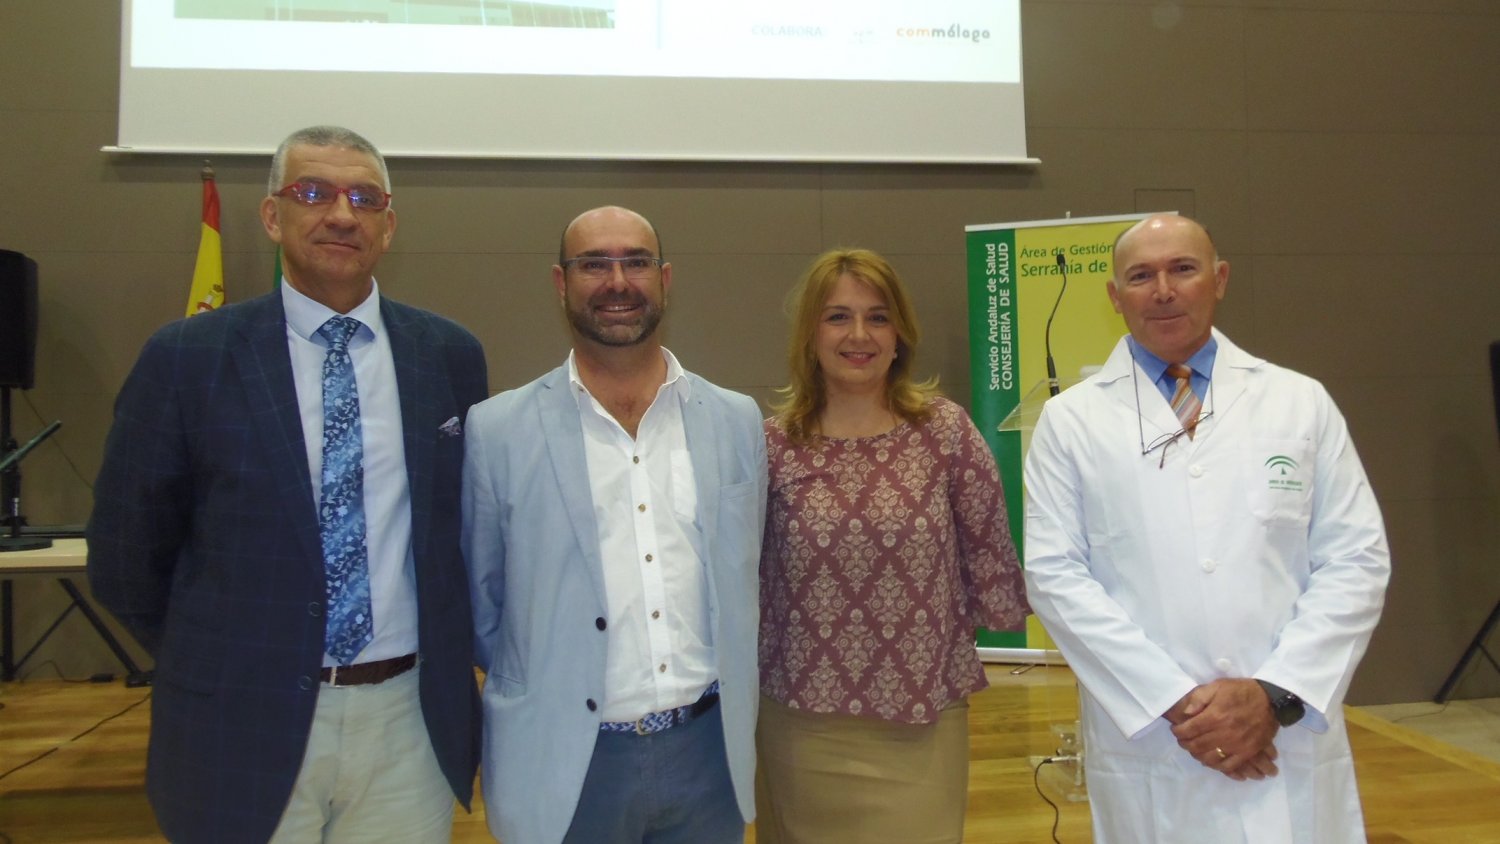 El Área de Gestión Sanitaria Serranía de Málaga organiza un encuentro sobre la atención en salud